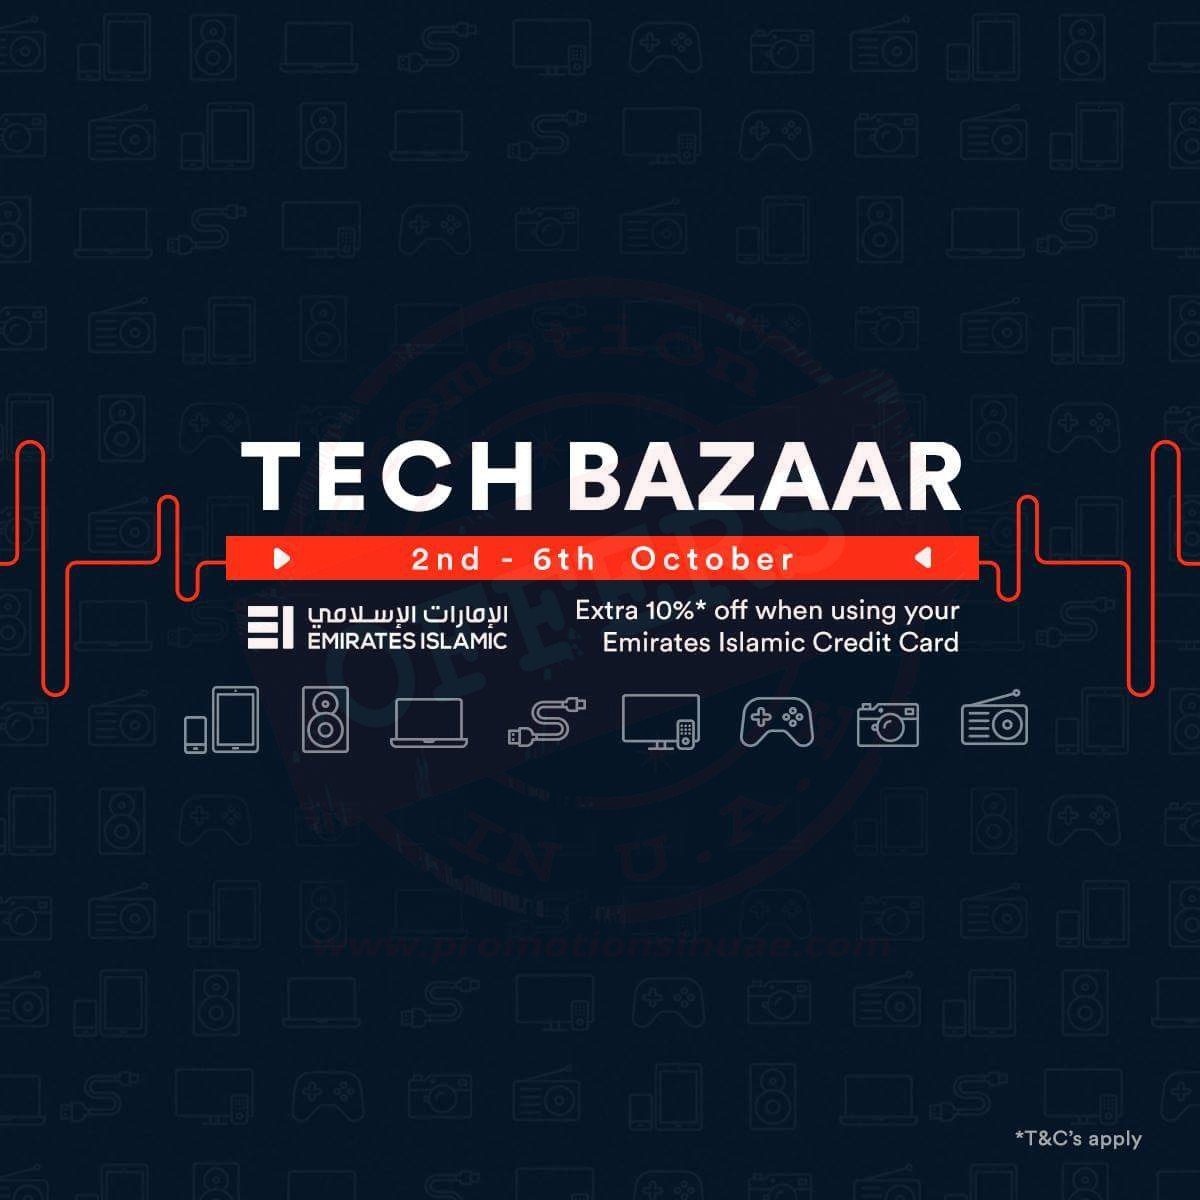 Tech Bazaar Is ON now. Souq.com